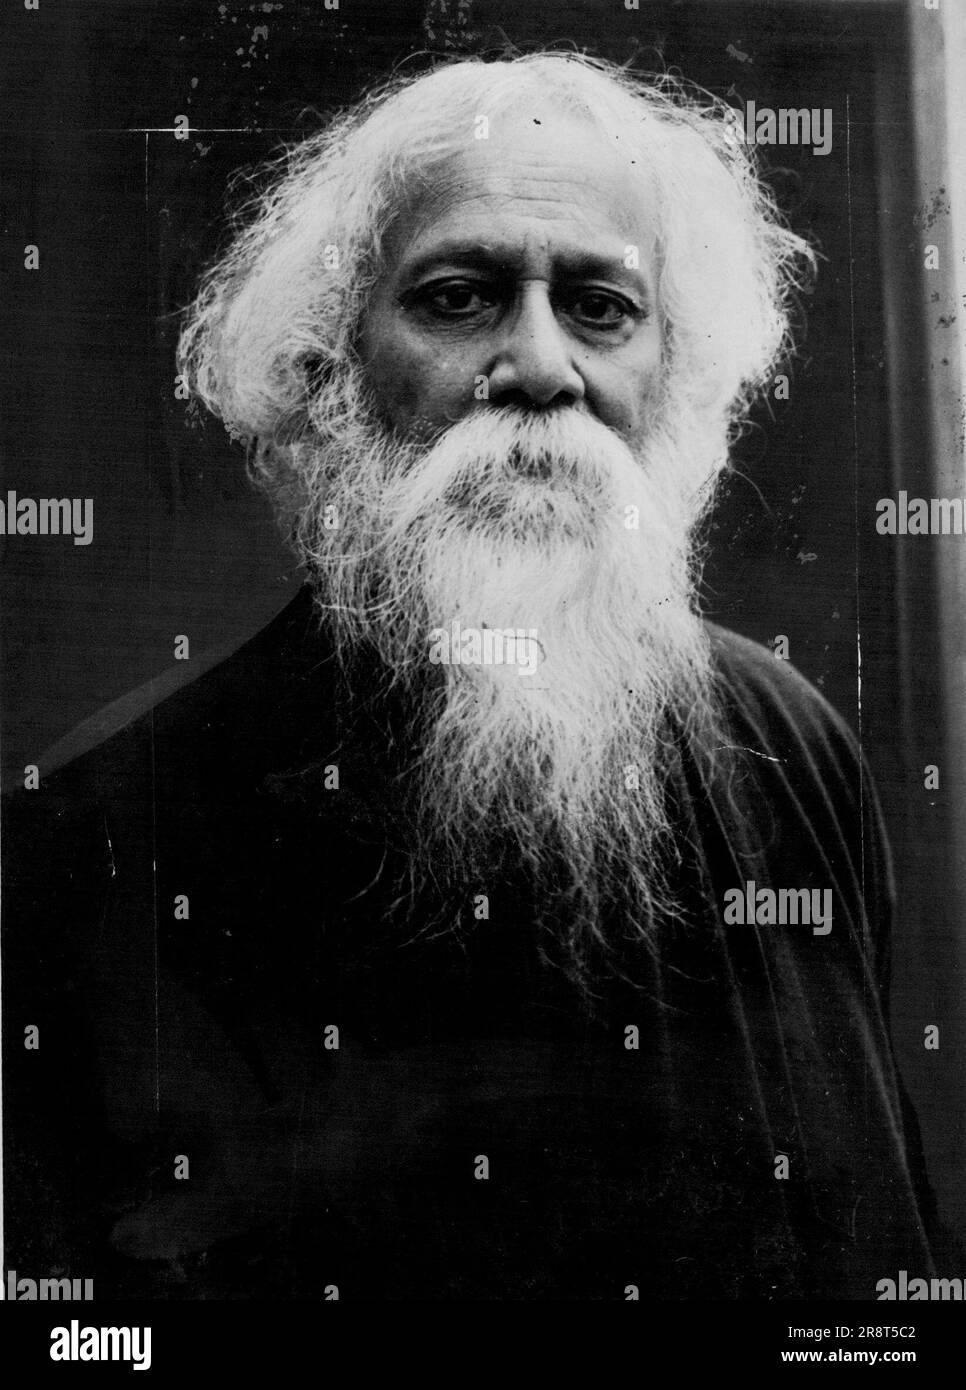 Rabindranath Tagore - India's National Poet 1930 - Author. November 1, 1930. Stock Photo